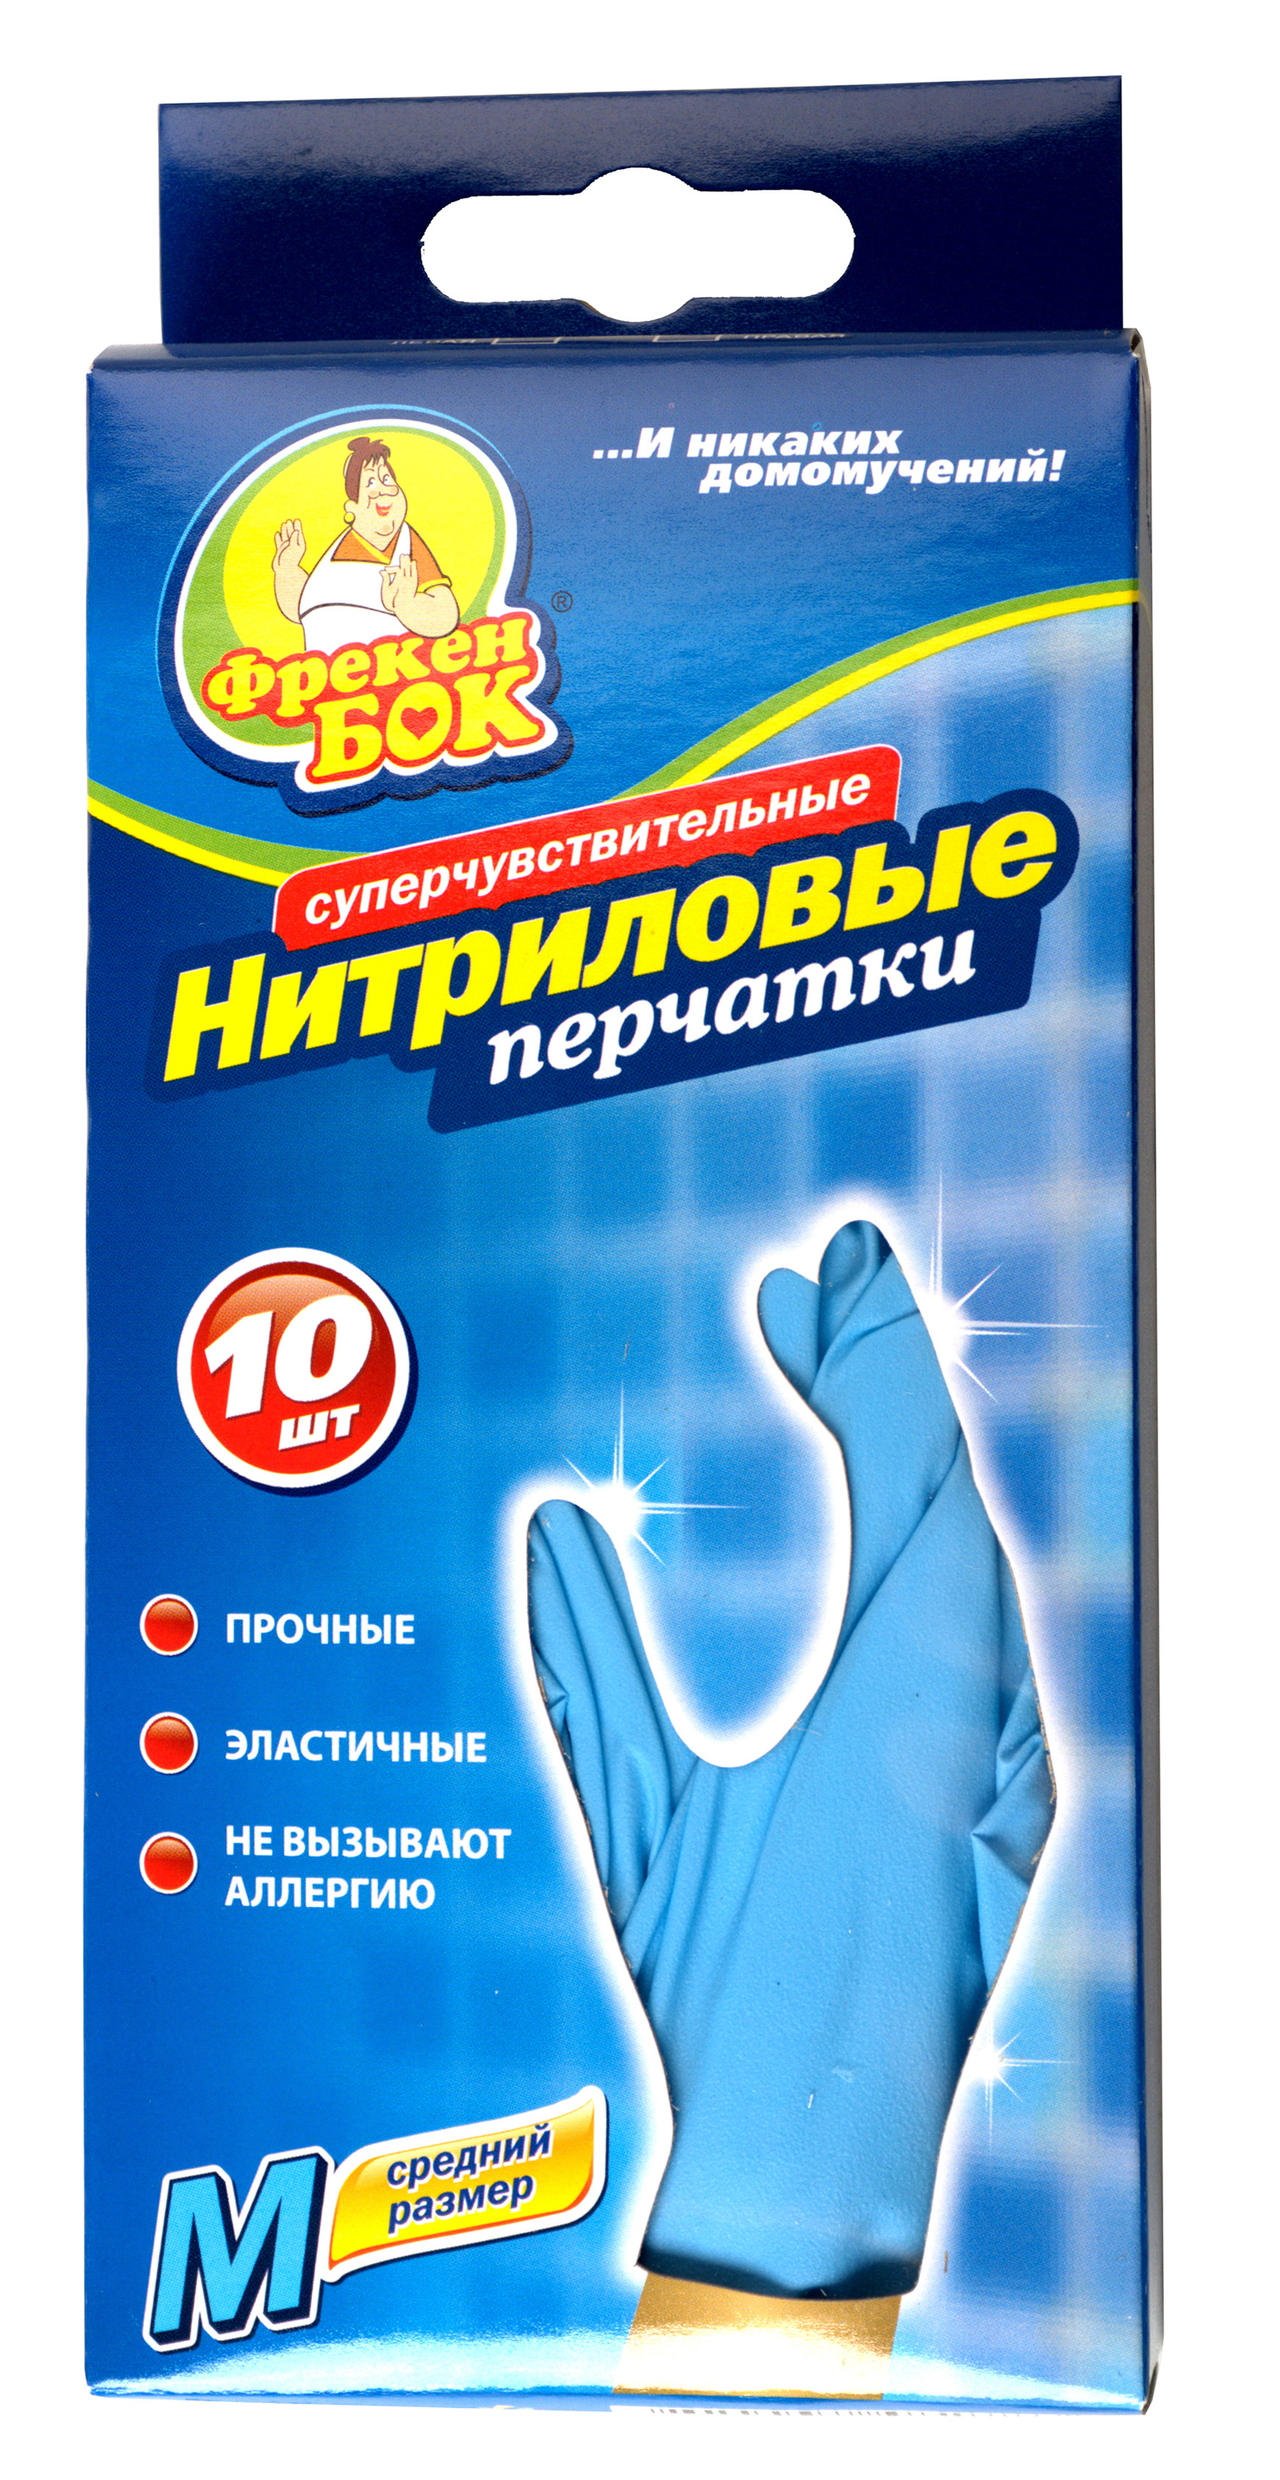 Фрекен бок перчатки нитриловые суперчувствительные одноразовые разм. m №10